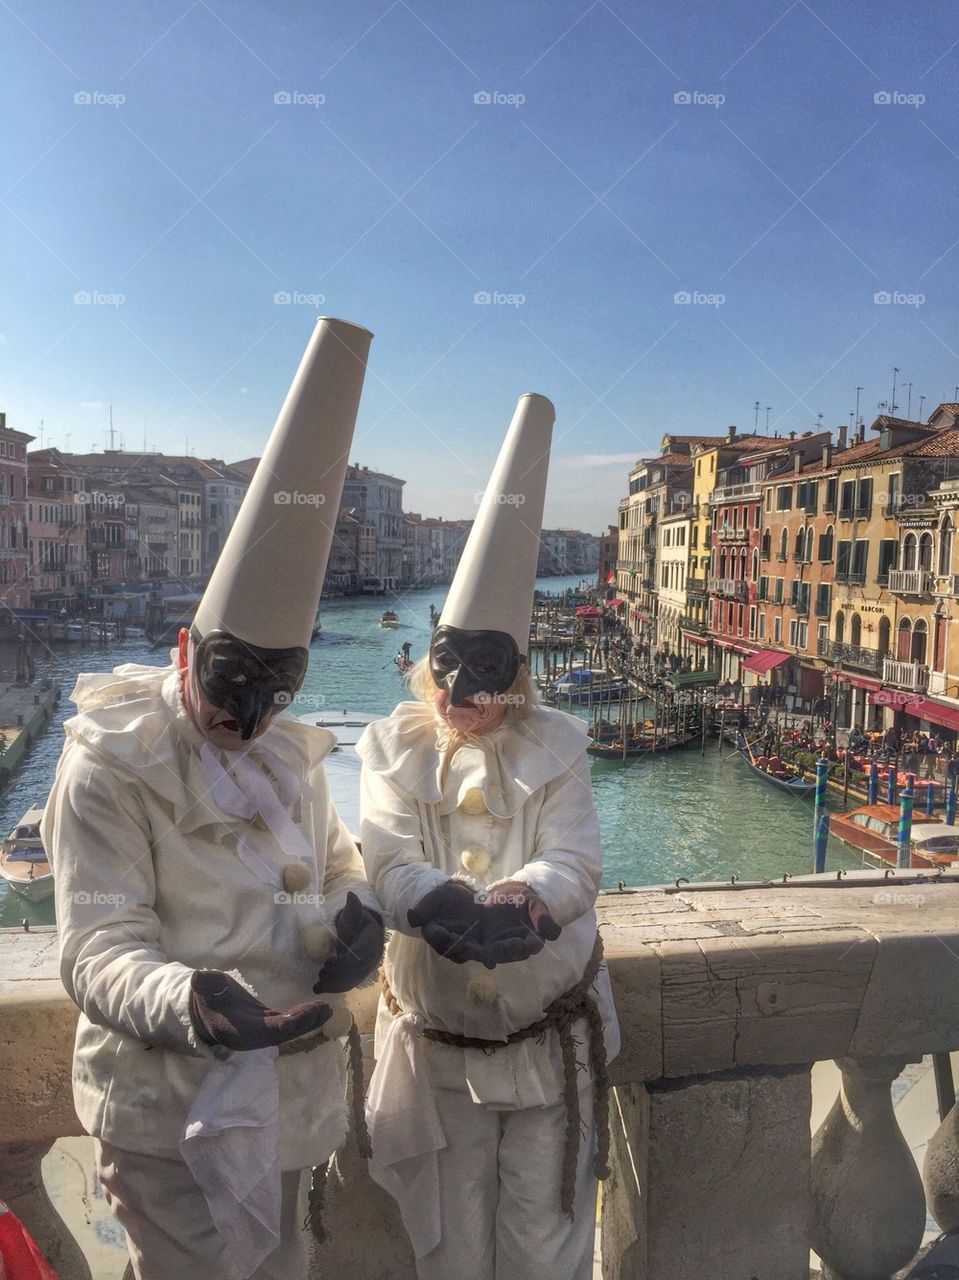 Carnevale costumes on the Rialto Bridge, Venice